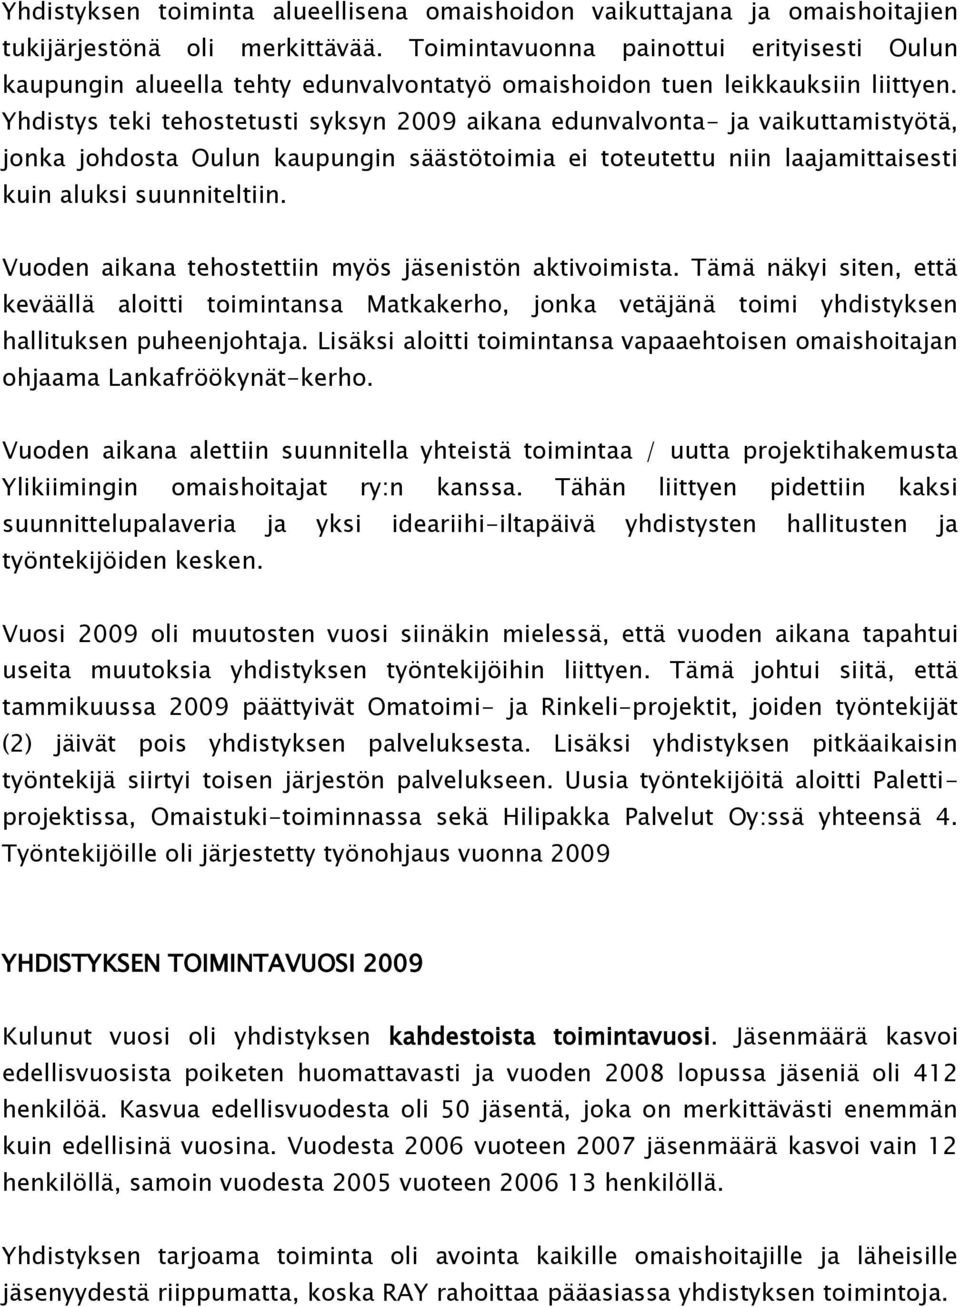 Yhdistys teki tehostetusti syksyn 2009 aikana edunvalvonta- ja vaikuttamistyötä, jonka johdosta Oulun kaupungin säästötoimia ei toteutettu niin laajamittaisesti kuin aluksi suunniteltiin.